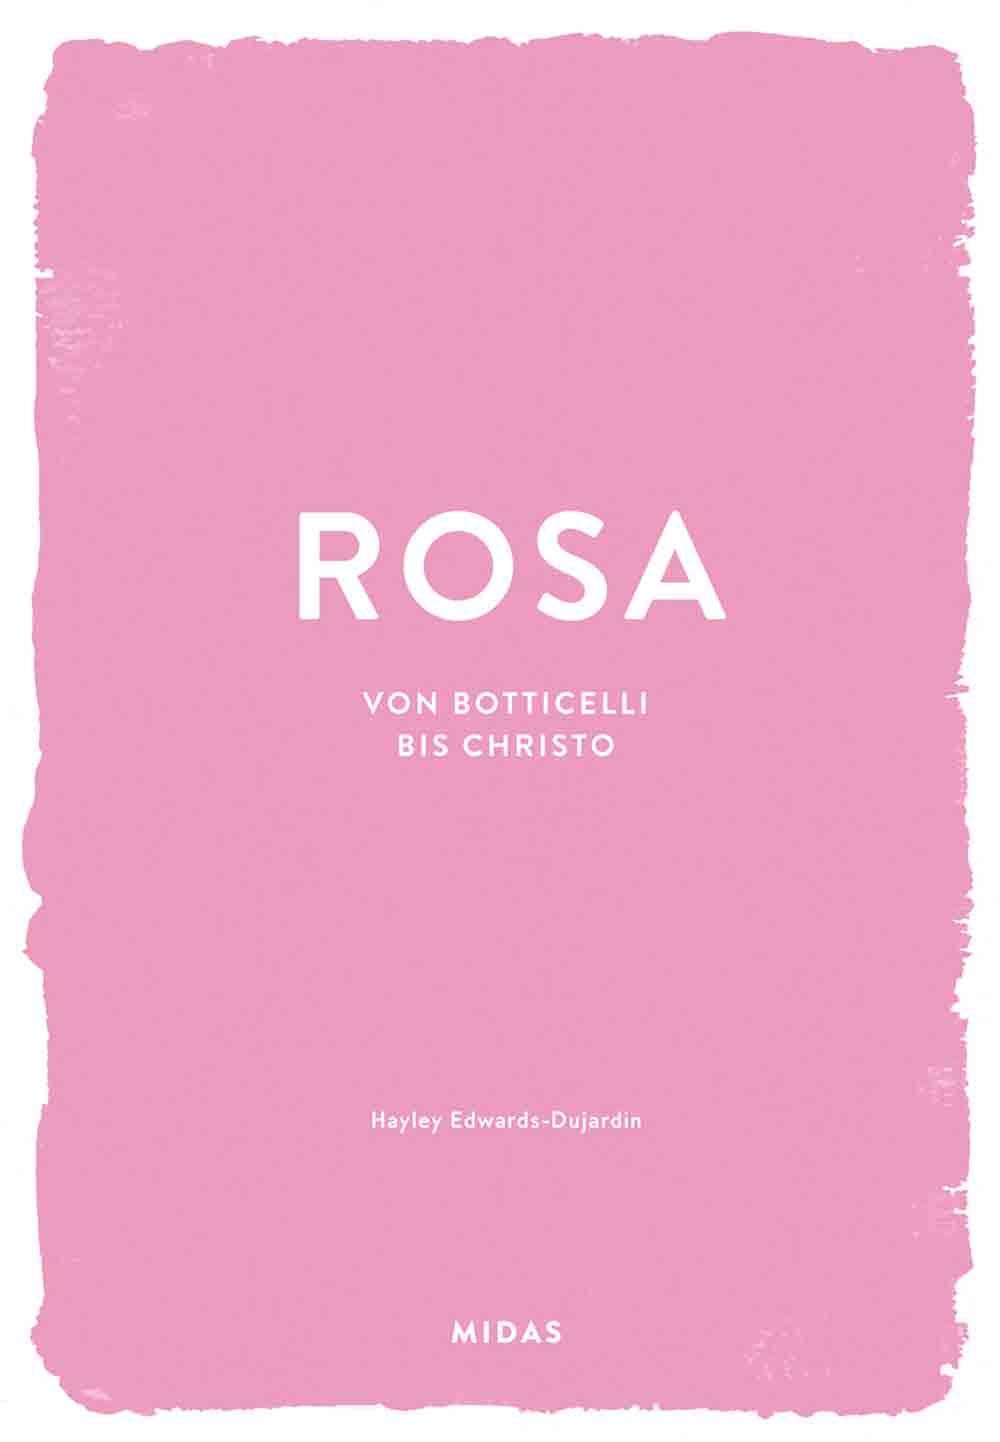 Lesetipps für Gütersloh, Hayley Edwards-Dujardin, ROSA (Farben der Kunst), von Botticelli bis Christo